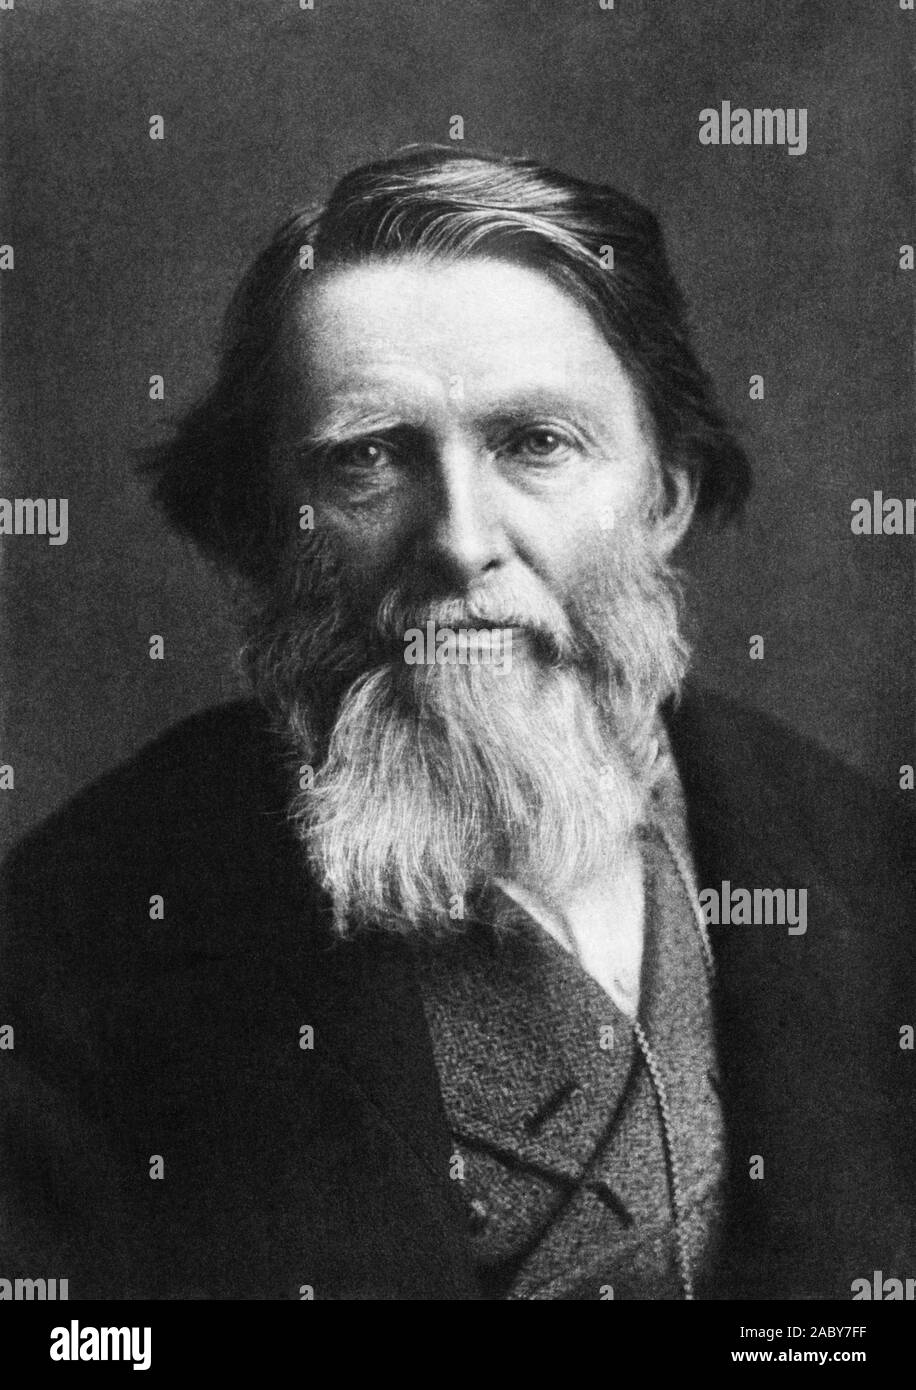 Jahrgang Porträt Foto des Englischen Kunstkritiker, Maler und Schriftsteller John Ruskin (1819 - 1900). Foto ca. 1880 von Elliott & Braten. Stockfoto